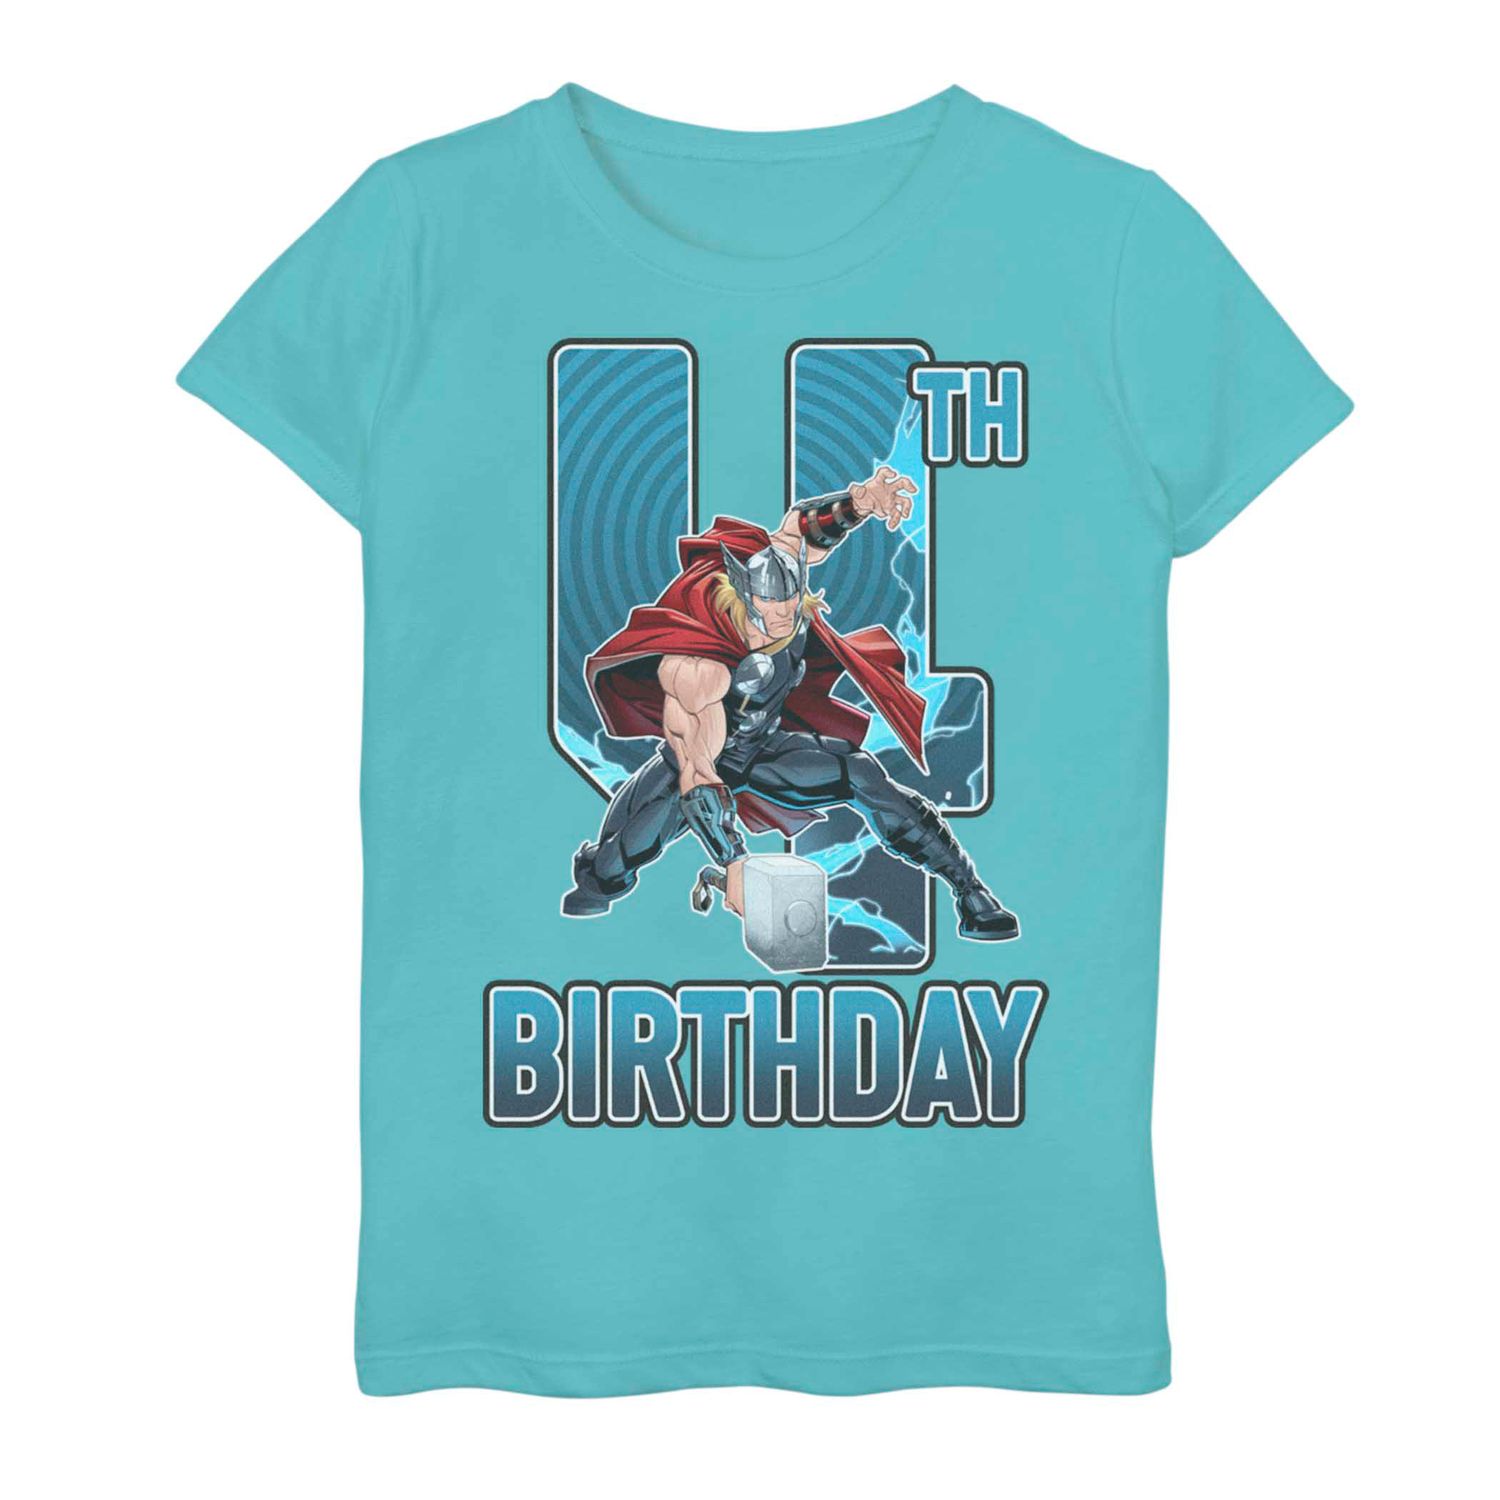 Футболка на 4-й день рождения для девочек 7–16 лет с изображением Marvel Thor Licensed Character футболка с изображением рожденного февраля 1950 года ограниченный выпуск подарки на 70 й день рождения футболка